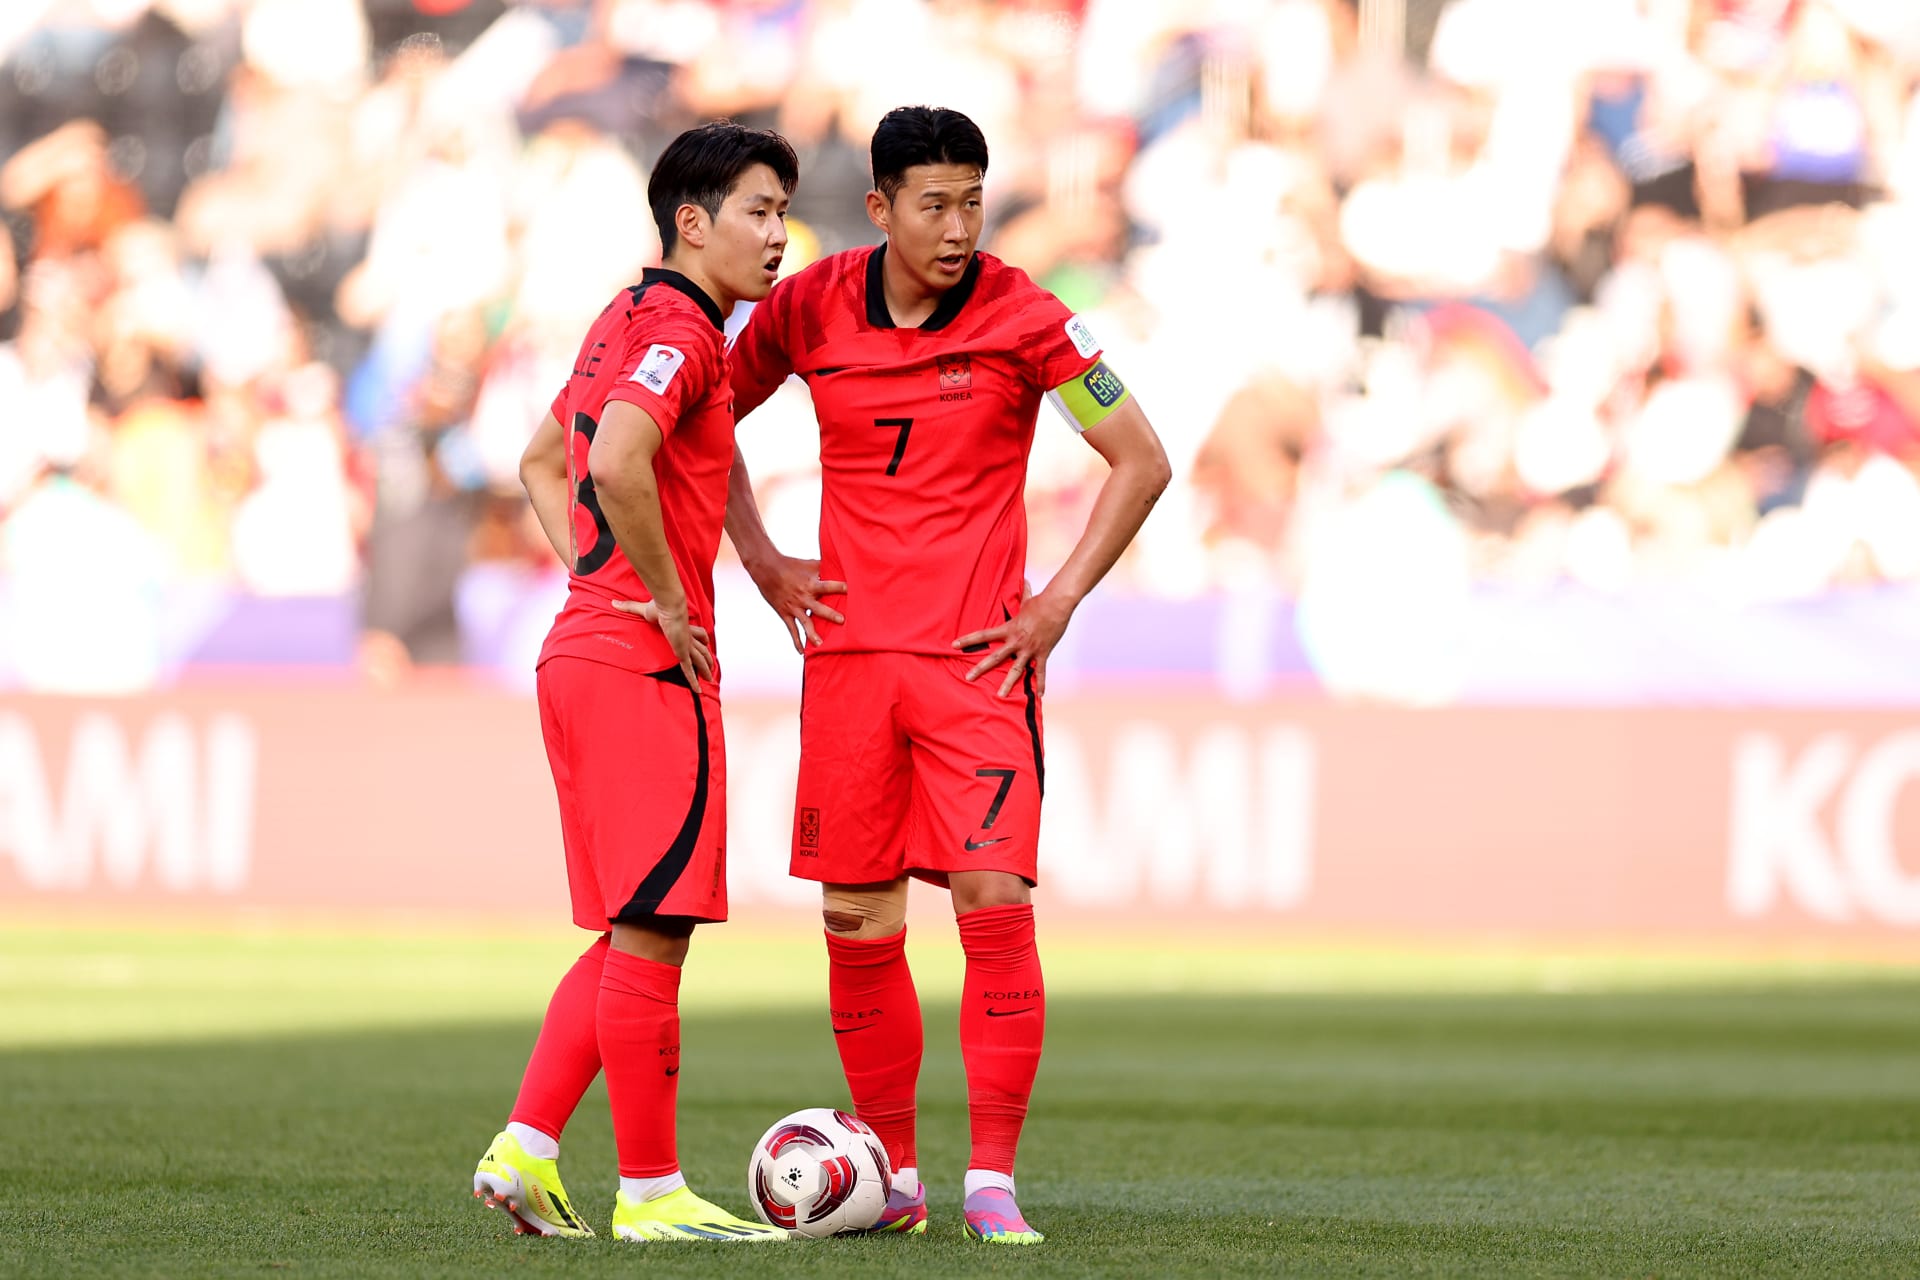 بعد اشتباكهما بالأيدي.. لاعب منتخب كوريا الجنوبية يعتذر لسون هيونغ مين والأخير يرد